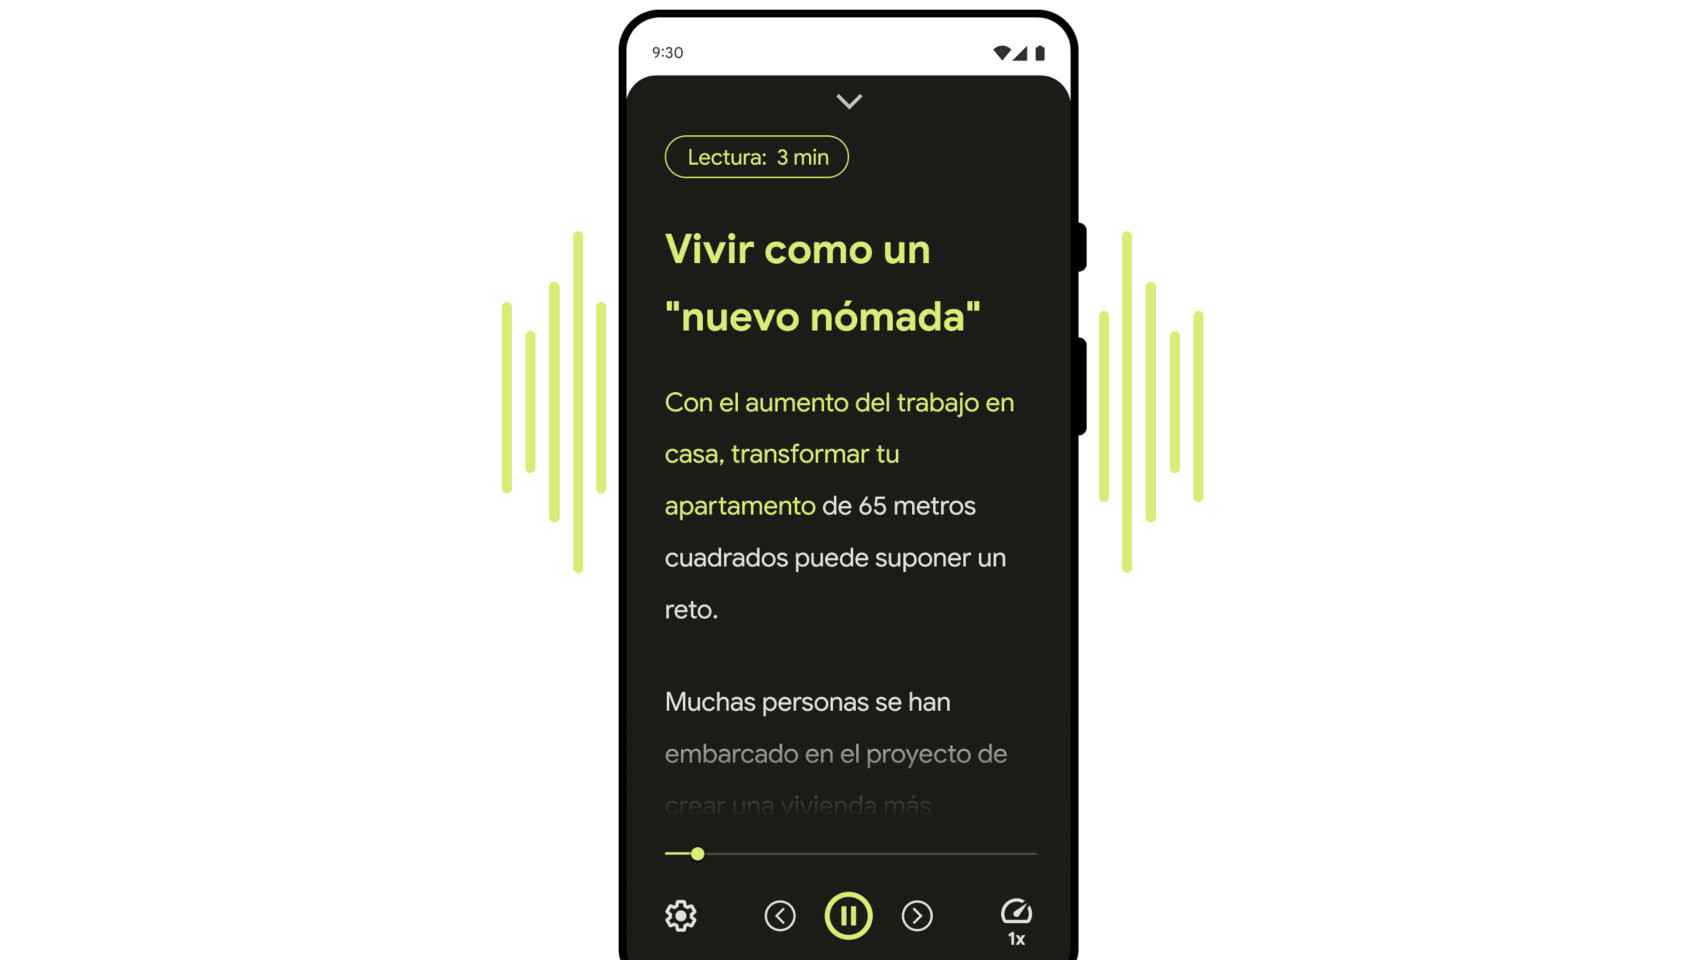 La app de Modo Lectura de Android puede leer en voz alta el contenido